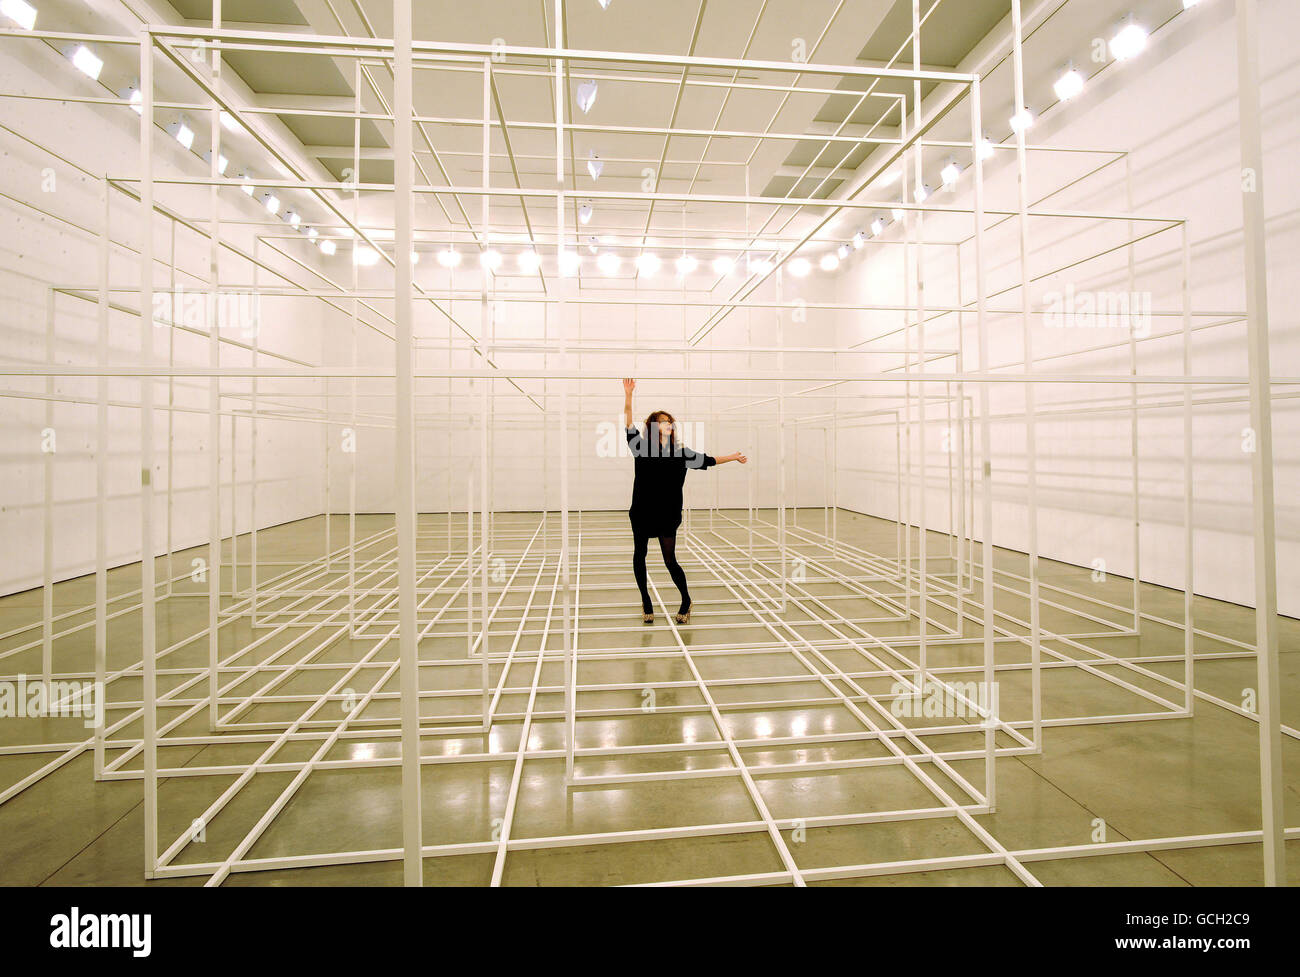 Als Mitarbeiter mit einer Installation von Antony Gormley, Breathing Room III, in der White Cube Gallery in London, besteht sie aus fotolumineszierenden „Space Frames“, die in kurzen, regelmäßigen Abständen hell erleuchtet werden, um sowohl desorientierende als auch meditative Phasen zu erleben, wenn sie in völlige Dunkelheit getaucht werden. Stockfoto